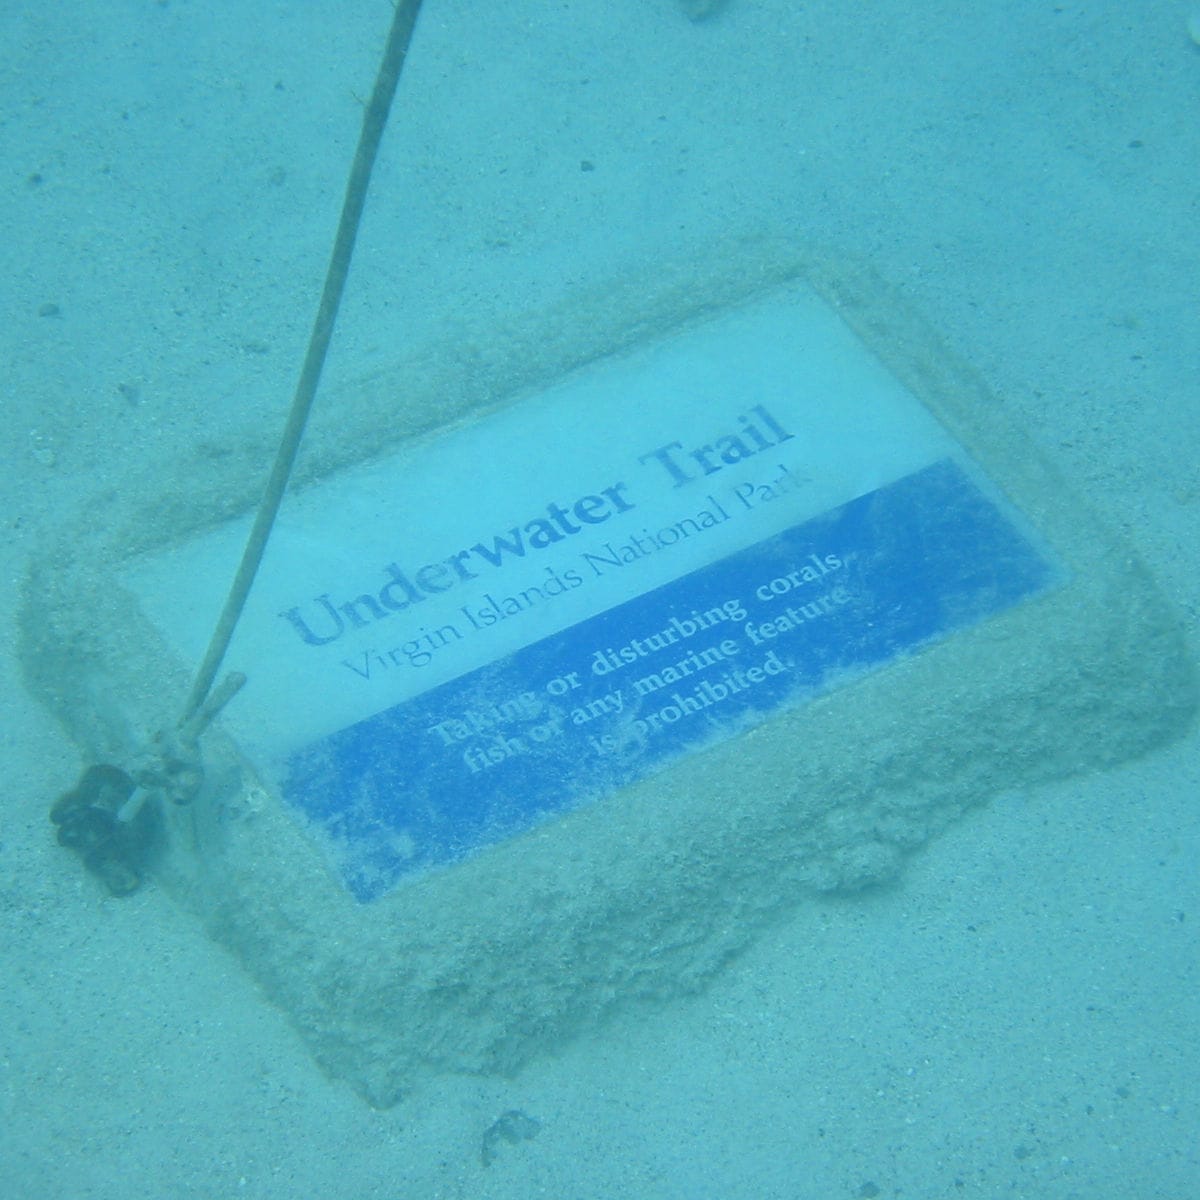 Underwater Trail with interpretative panels